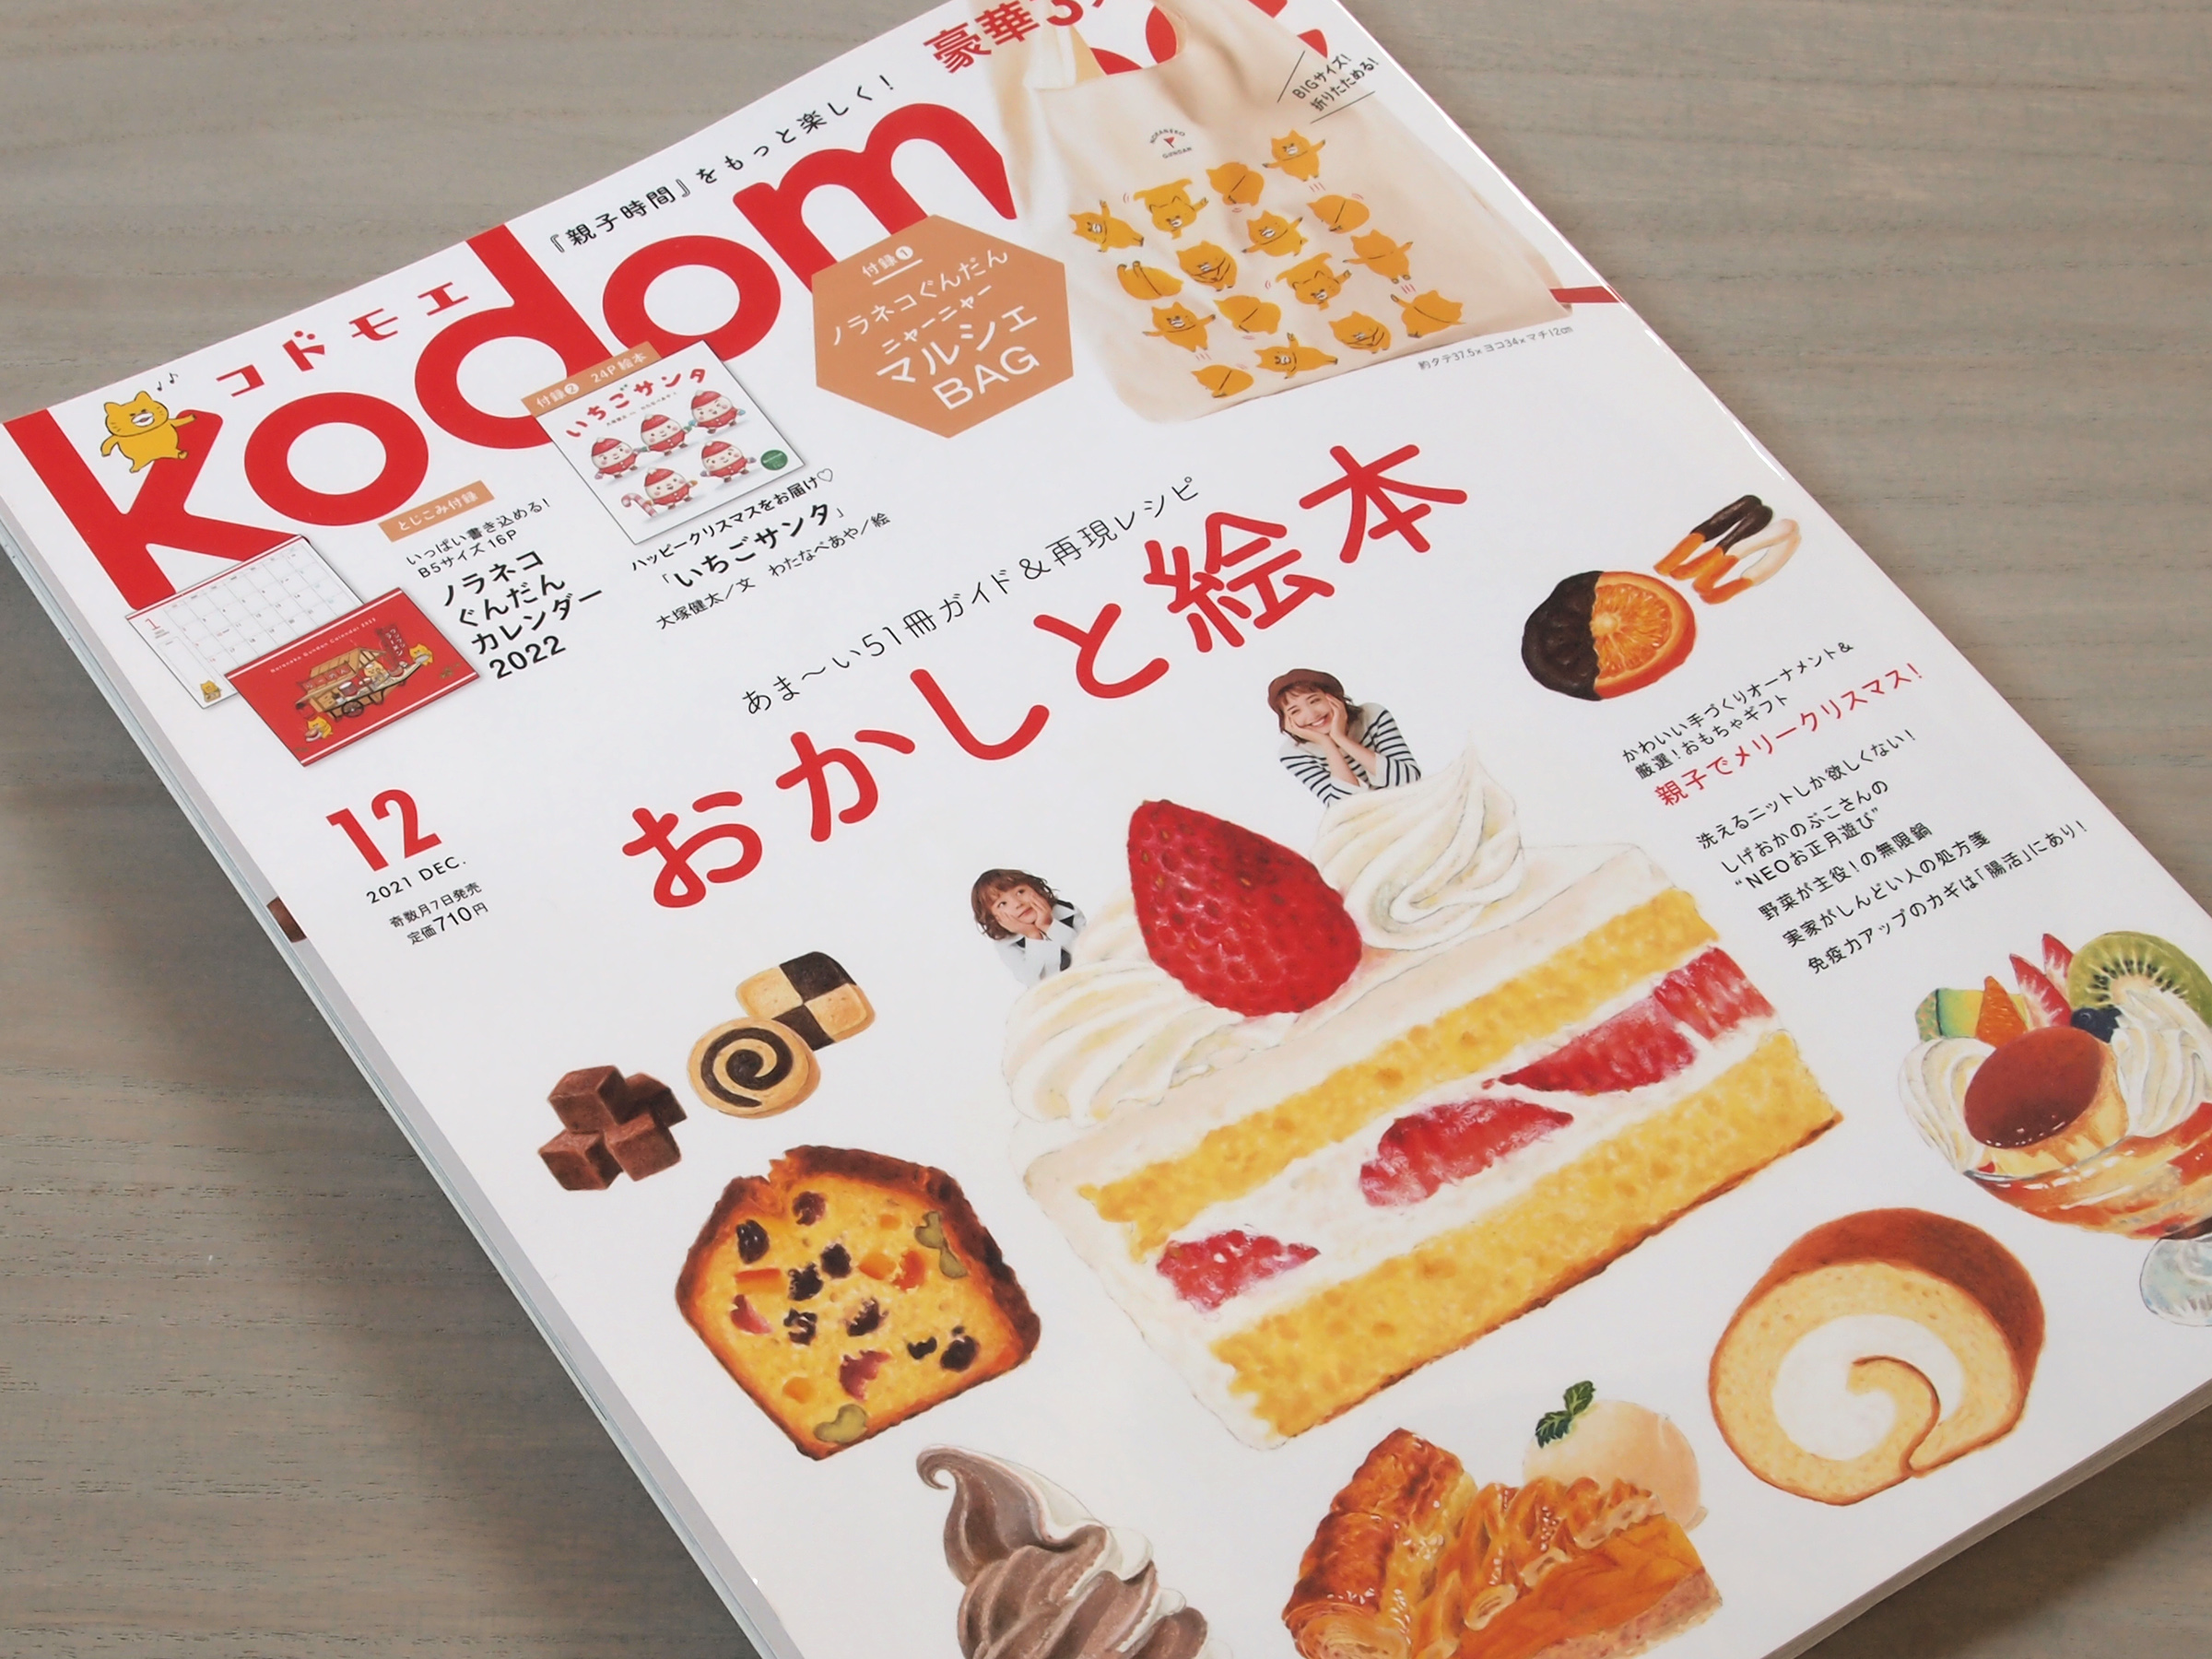 子育て情報誌「kodomoe」に掲載いただきました。クリスマスプレゼント選びにおすすめです。